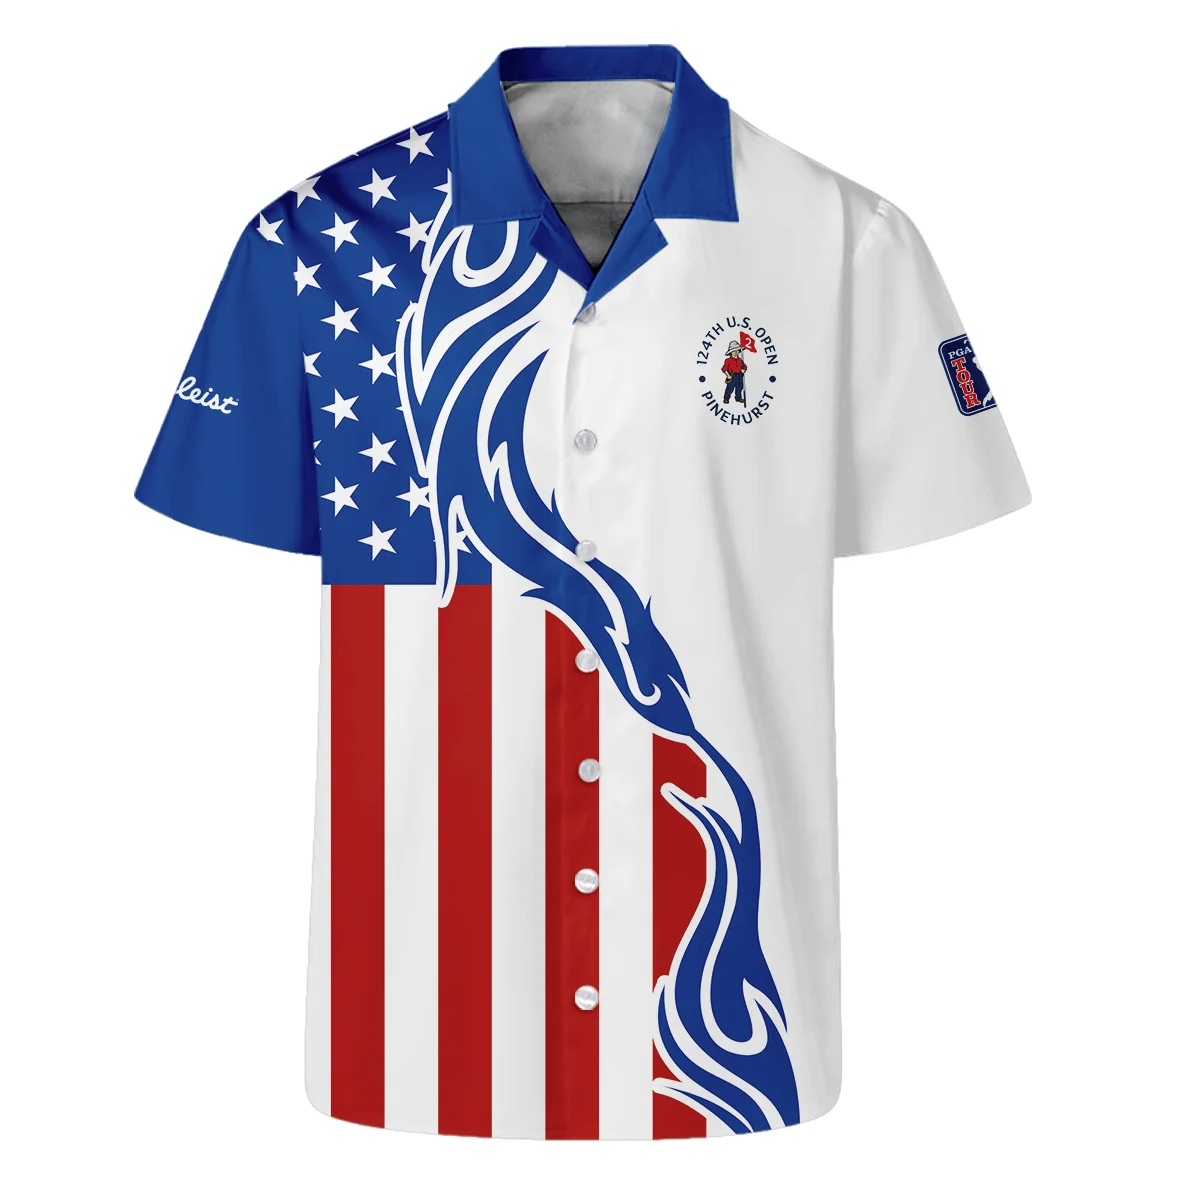 Golf Sport Titleist 124th U.S. Open Pinehurst Bomber Jacket USA Flag Pattern Blue White All Over Print Bomber Jacket